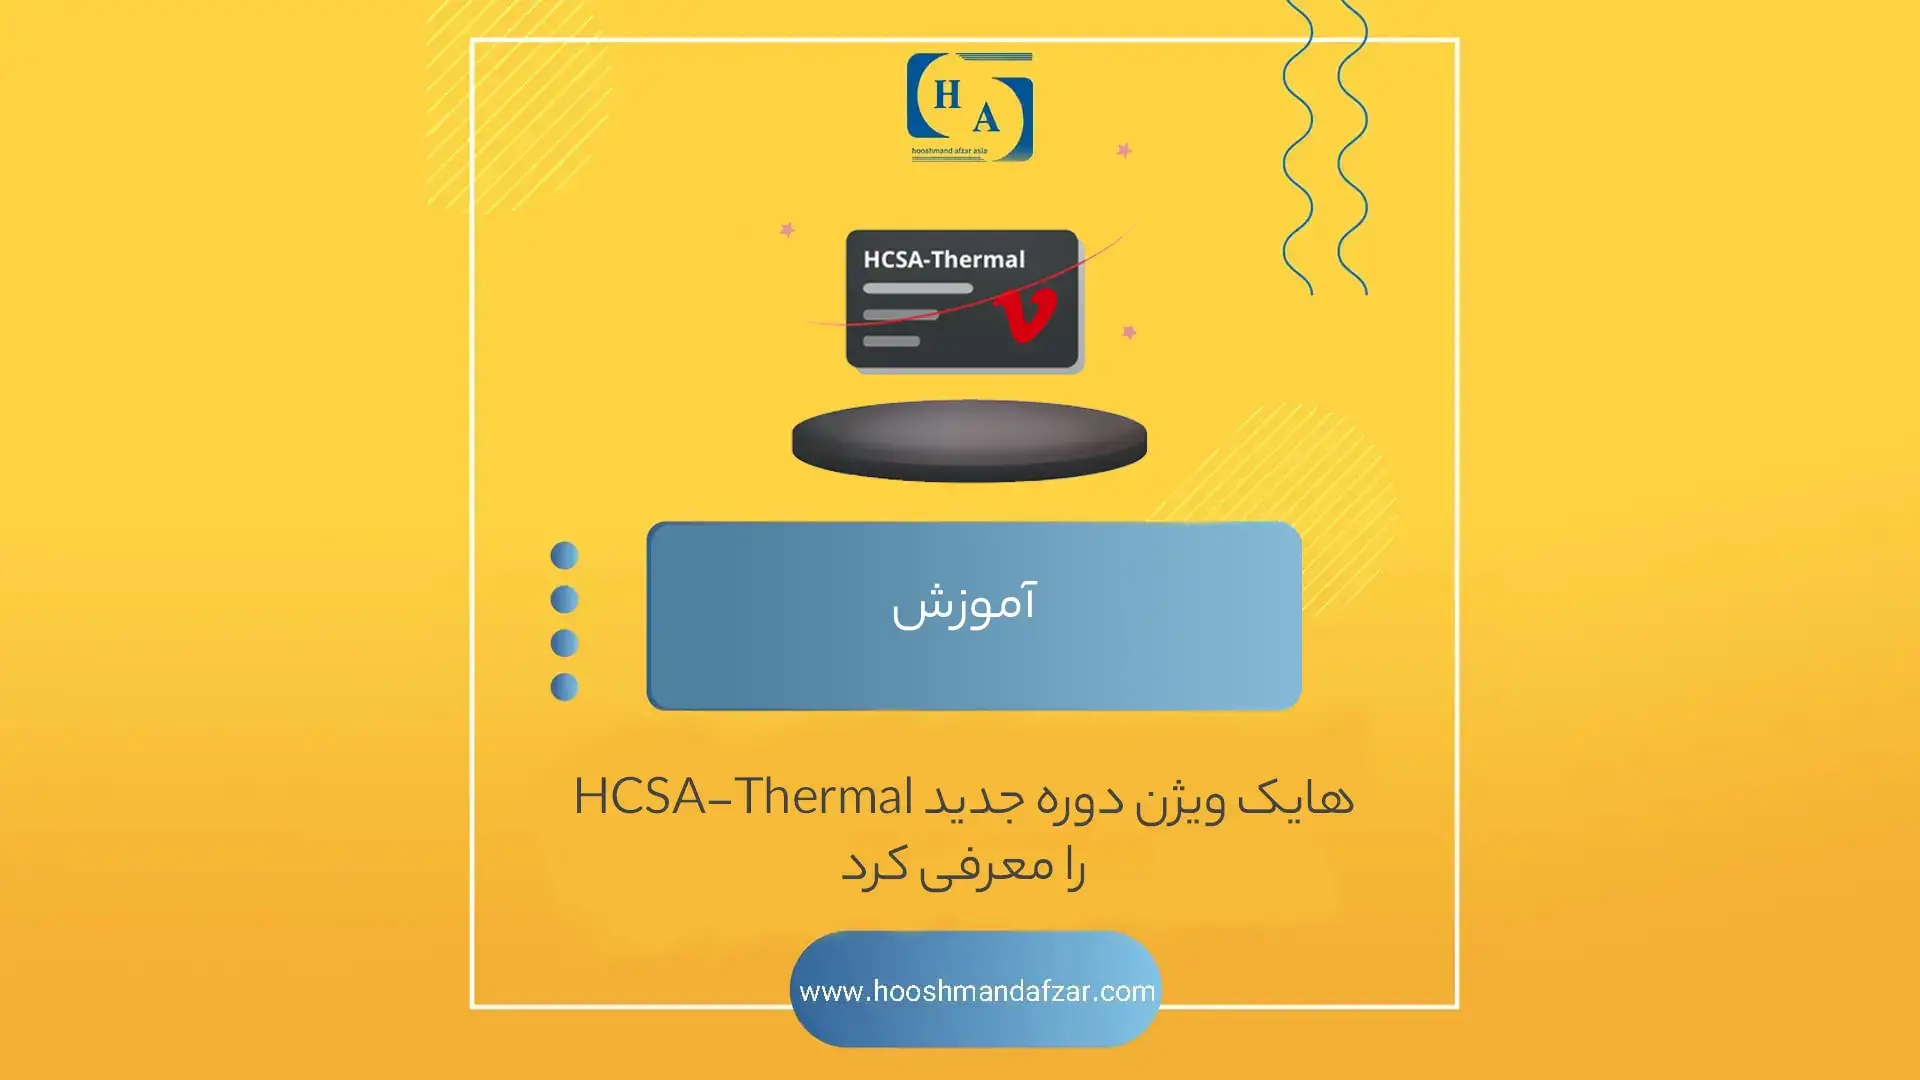 هایک ویژن دوره جدید HCSA-Thermal را معرفی کرد